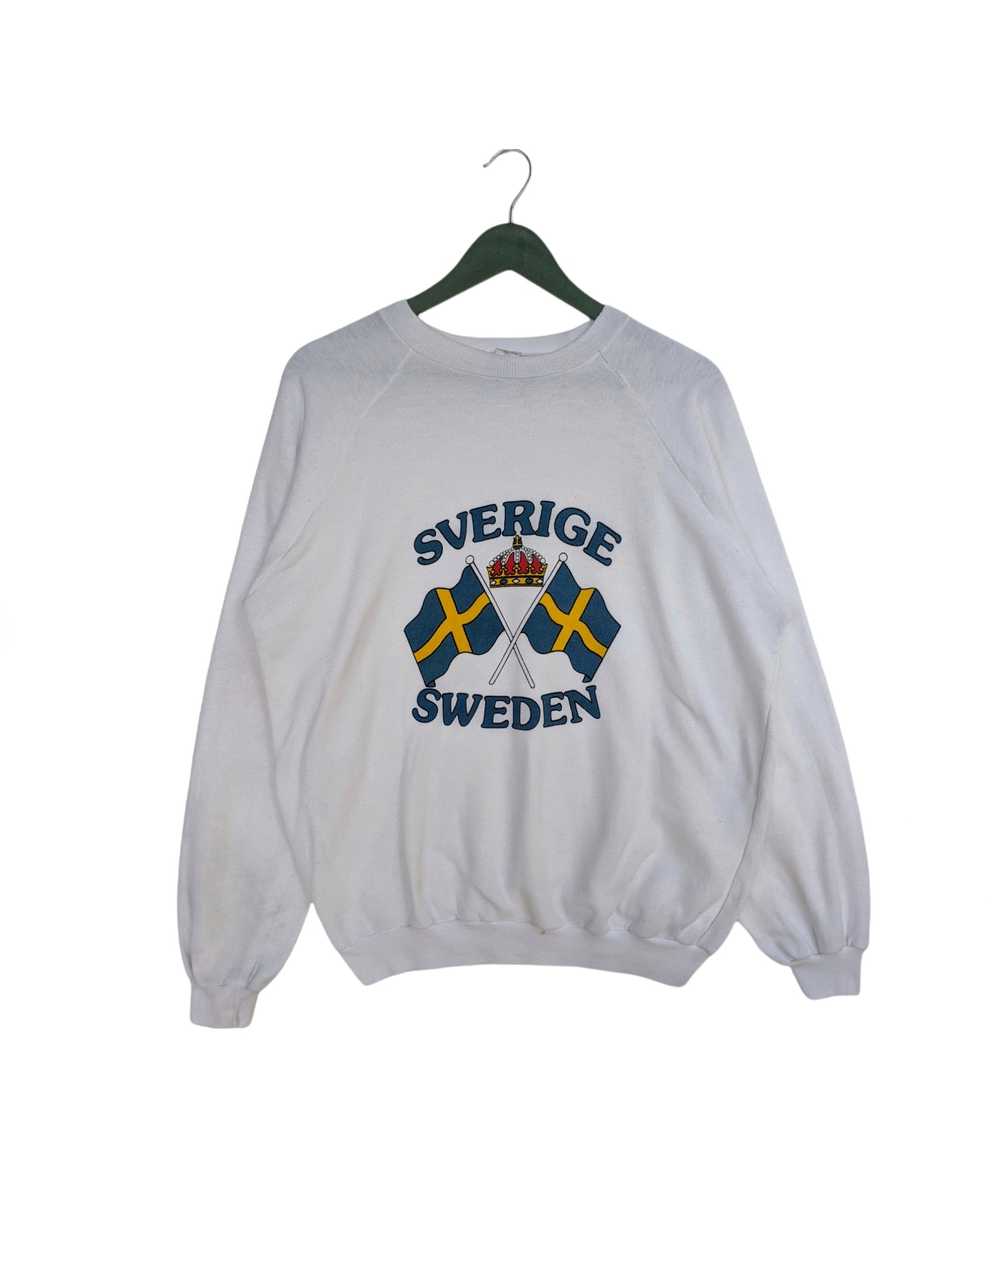 Vintage - Vintage Sverige Sweden Sweatshirt - image 1